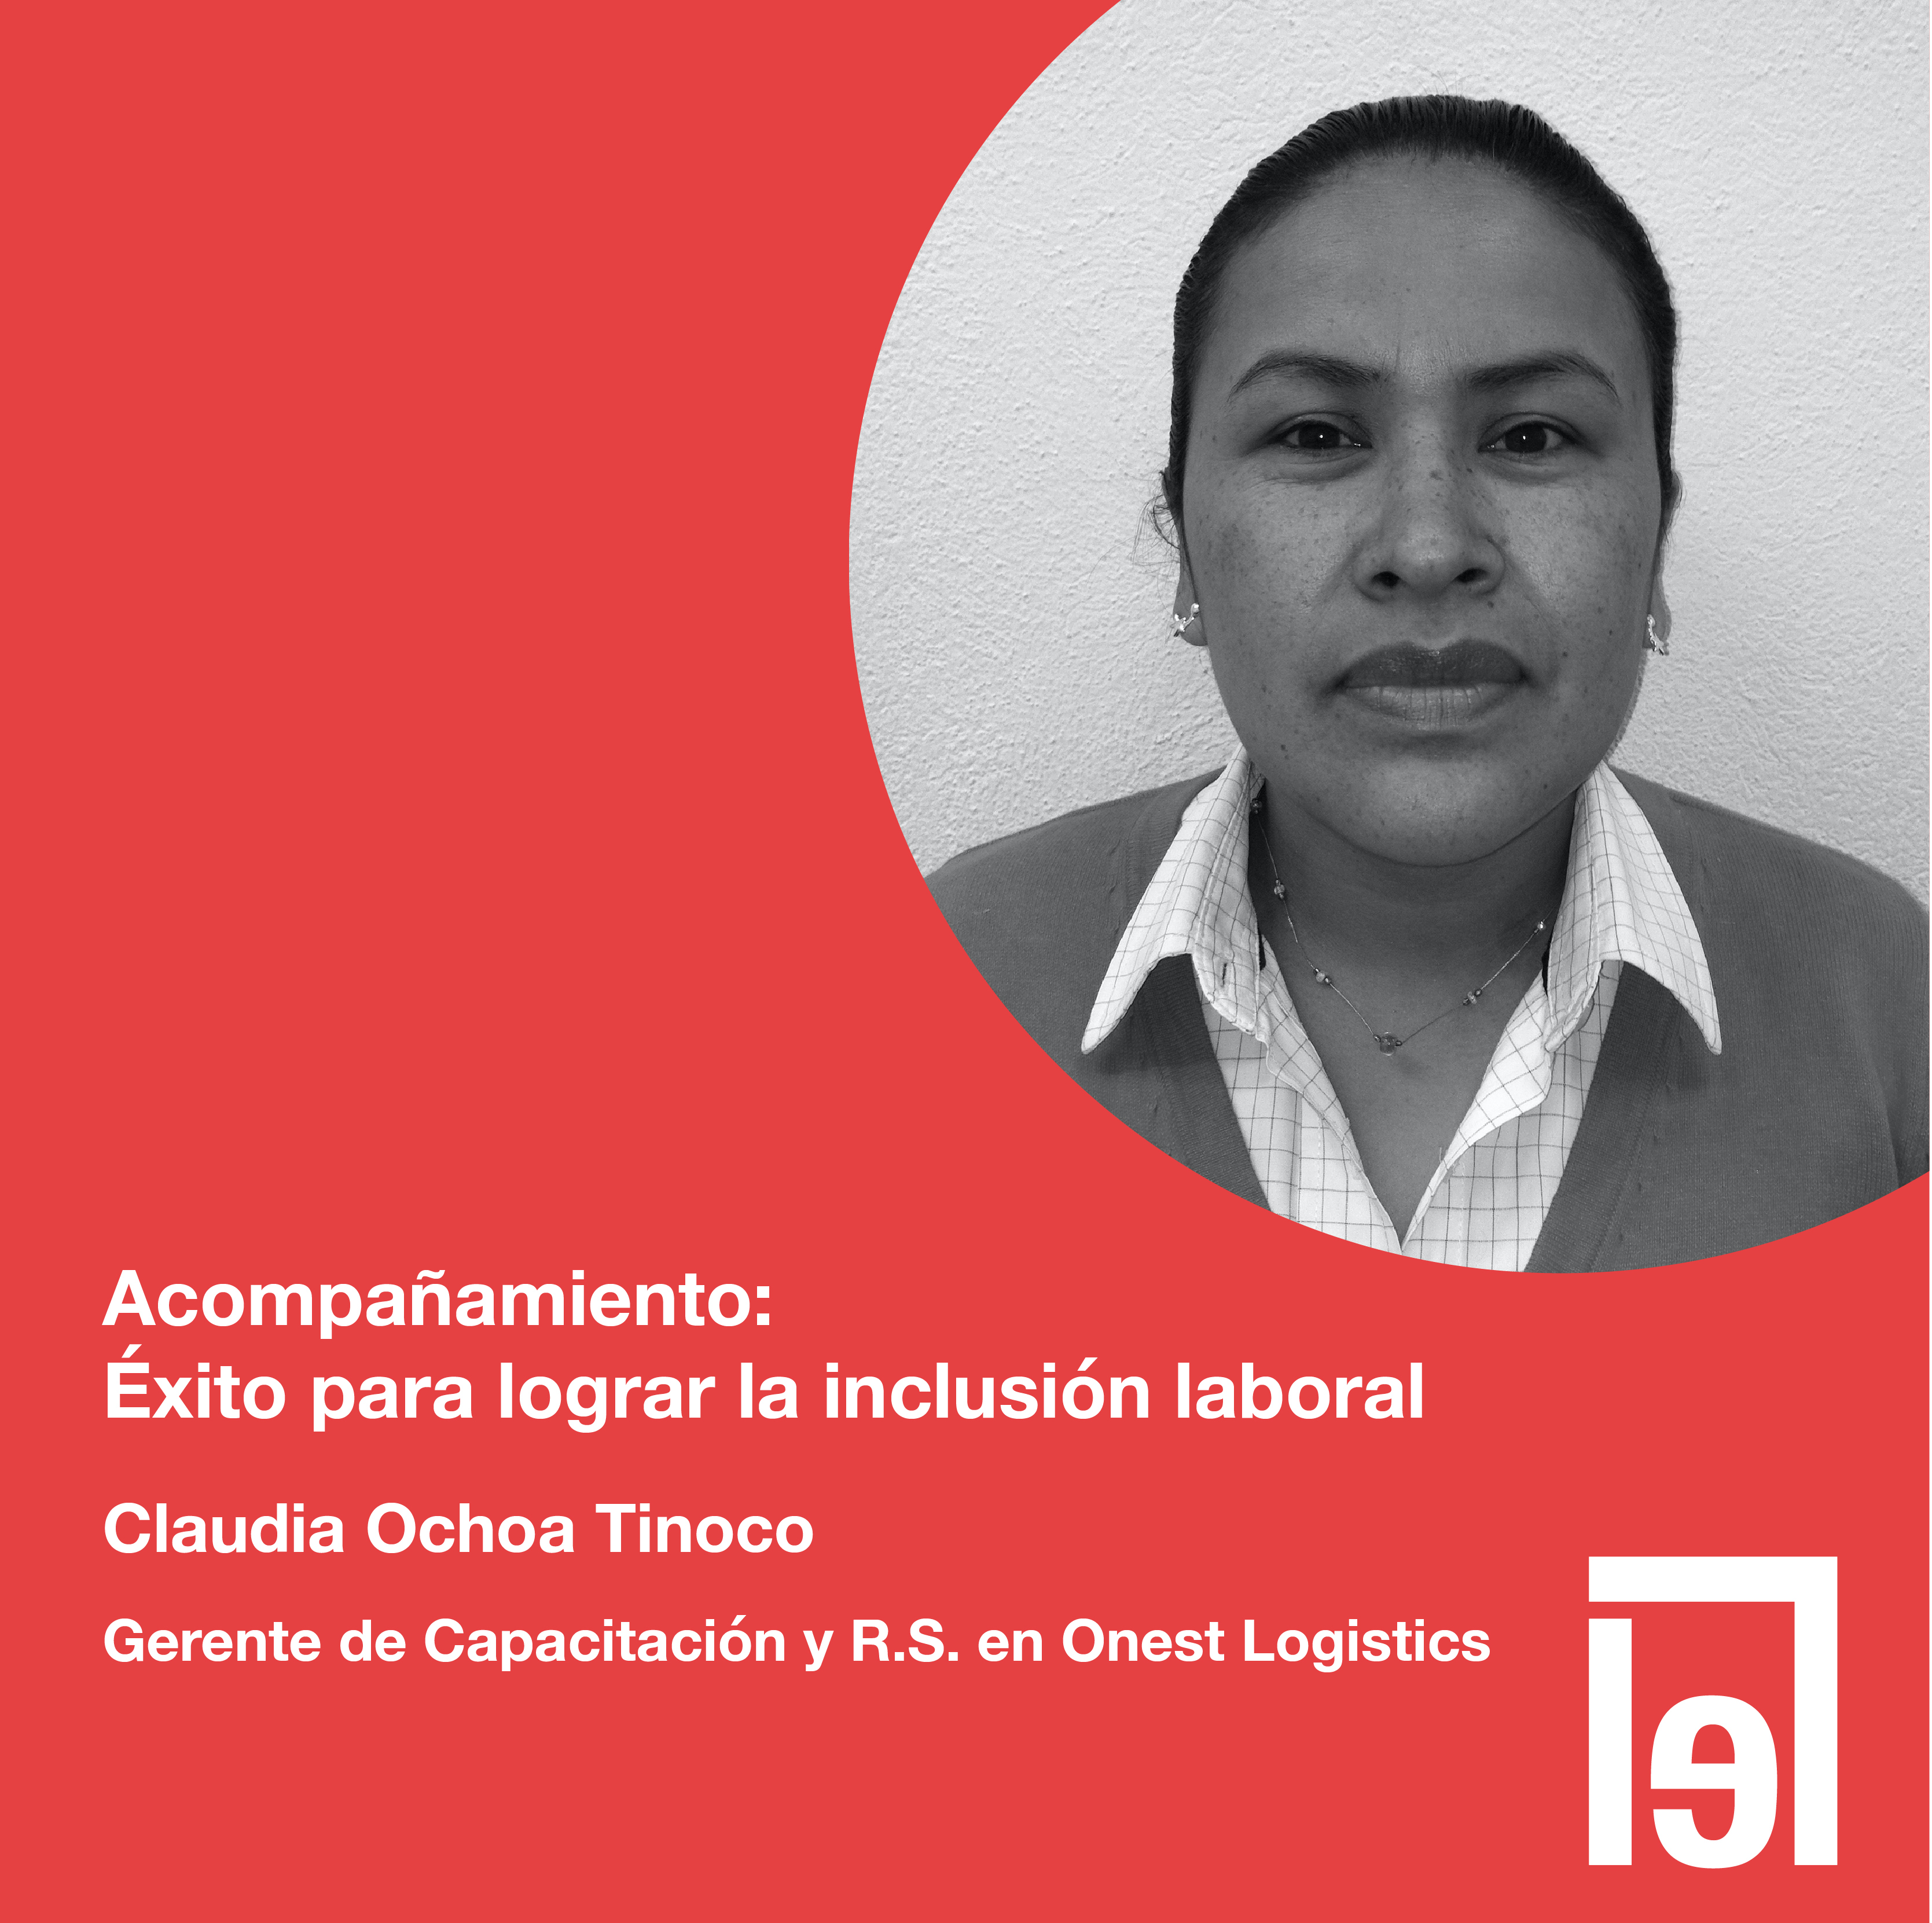 Claudia Ochoa Tinoco Gerente de Capacitación y R.S. Onest Logistics